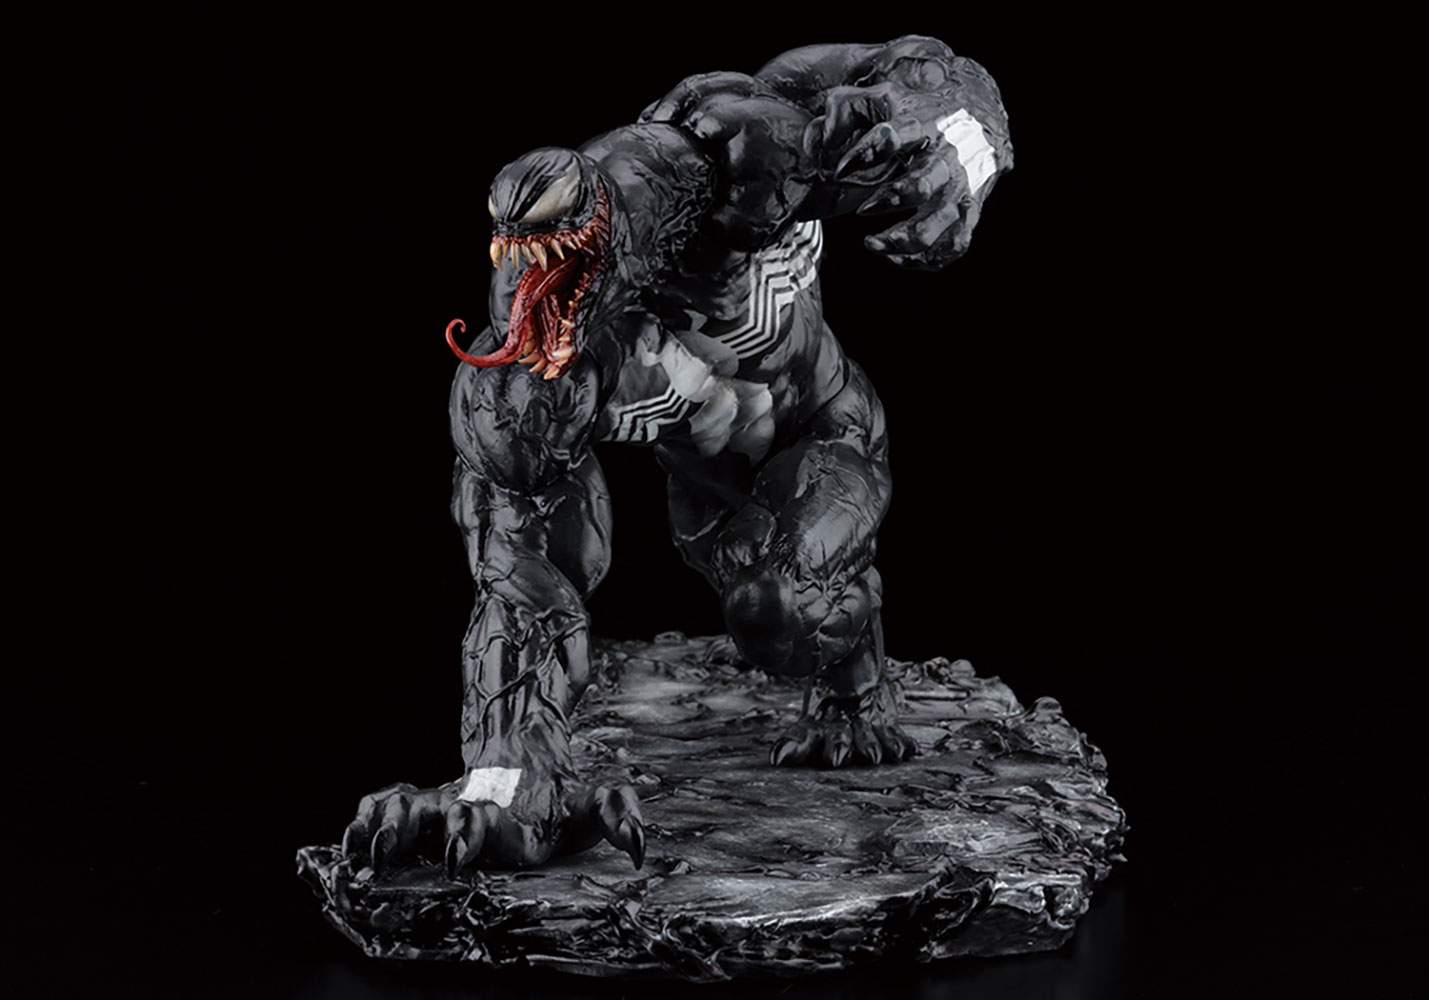 USA KOTOBUKIYA ARTFX Venom 1/10 PVC Action Figure Marvel Universe Figurines Toy 